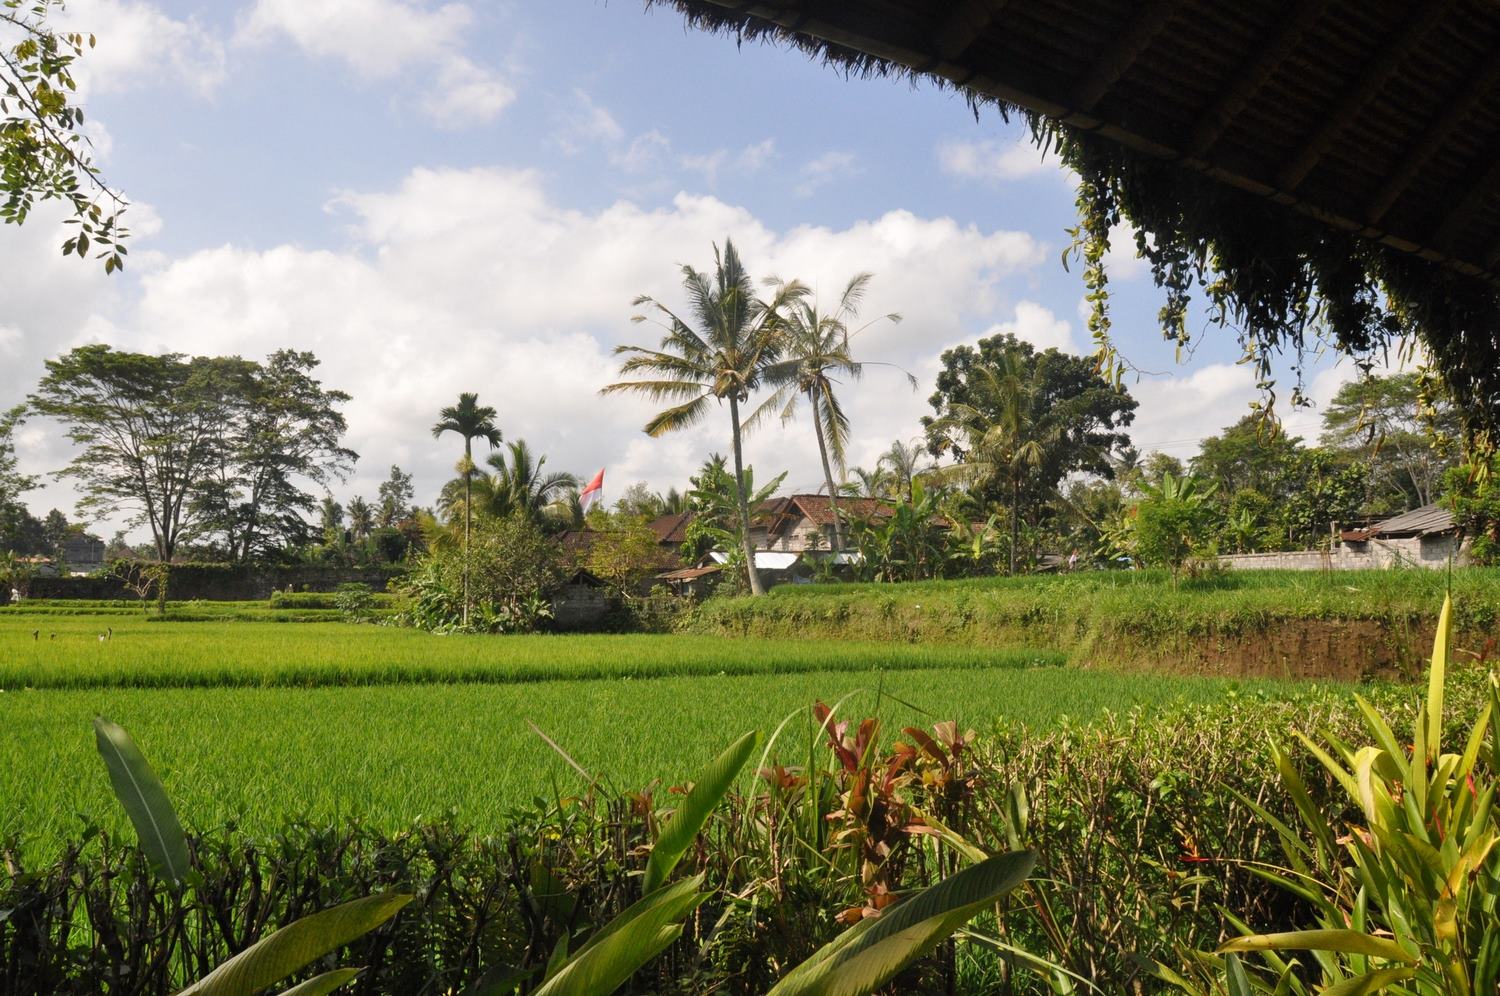 Bali rice fields Ubud